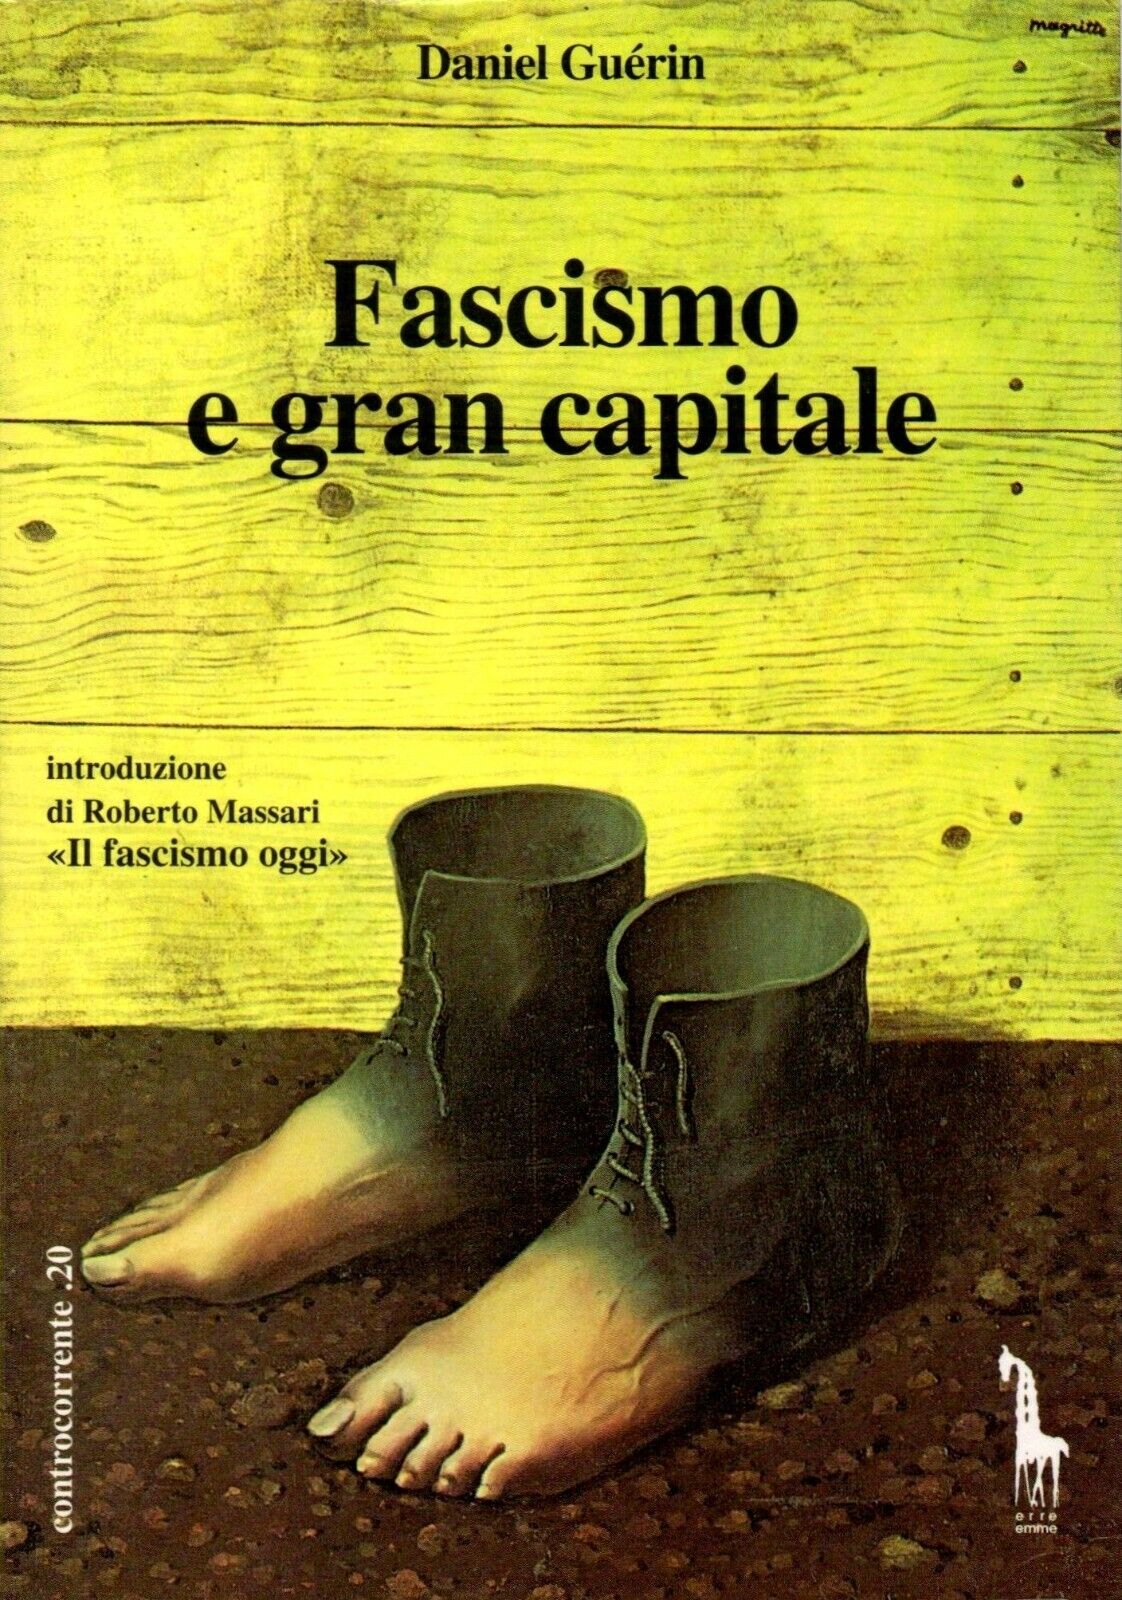 Fascismo e gran capitale di Daniel Gu?rin,  1994,  Massari Editore